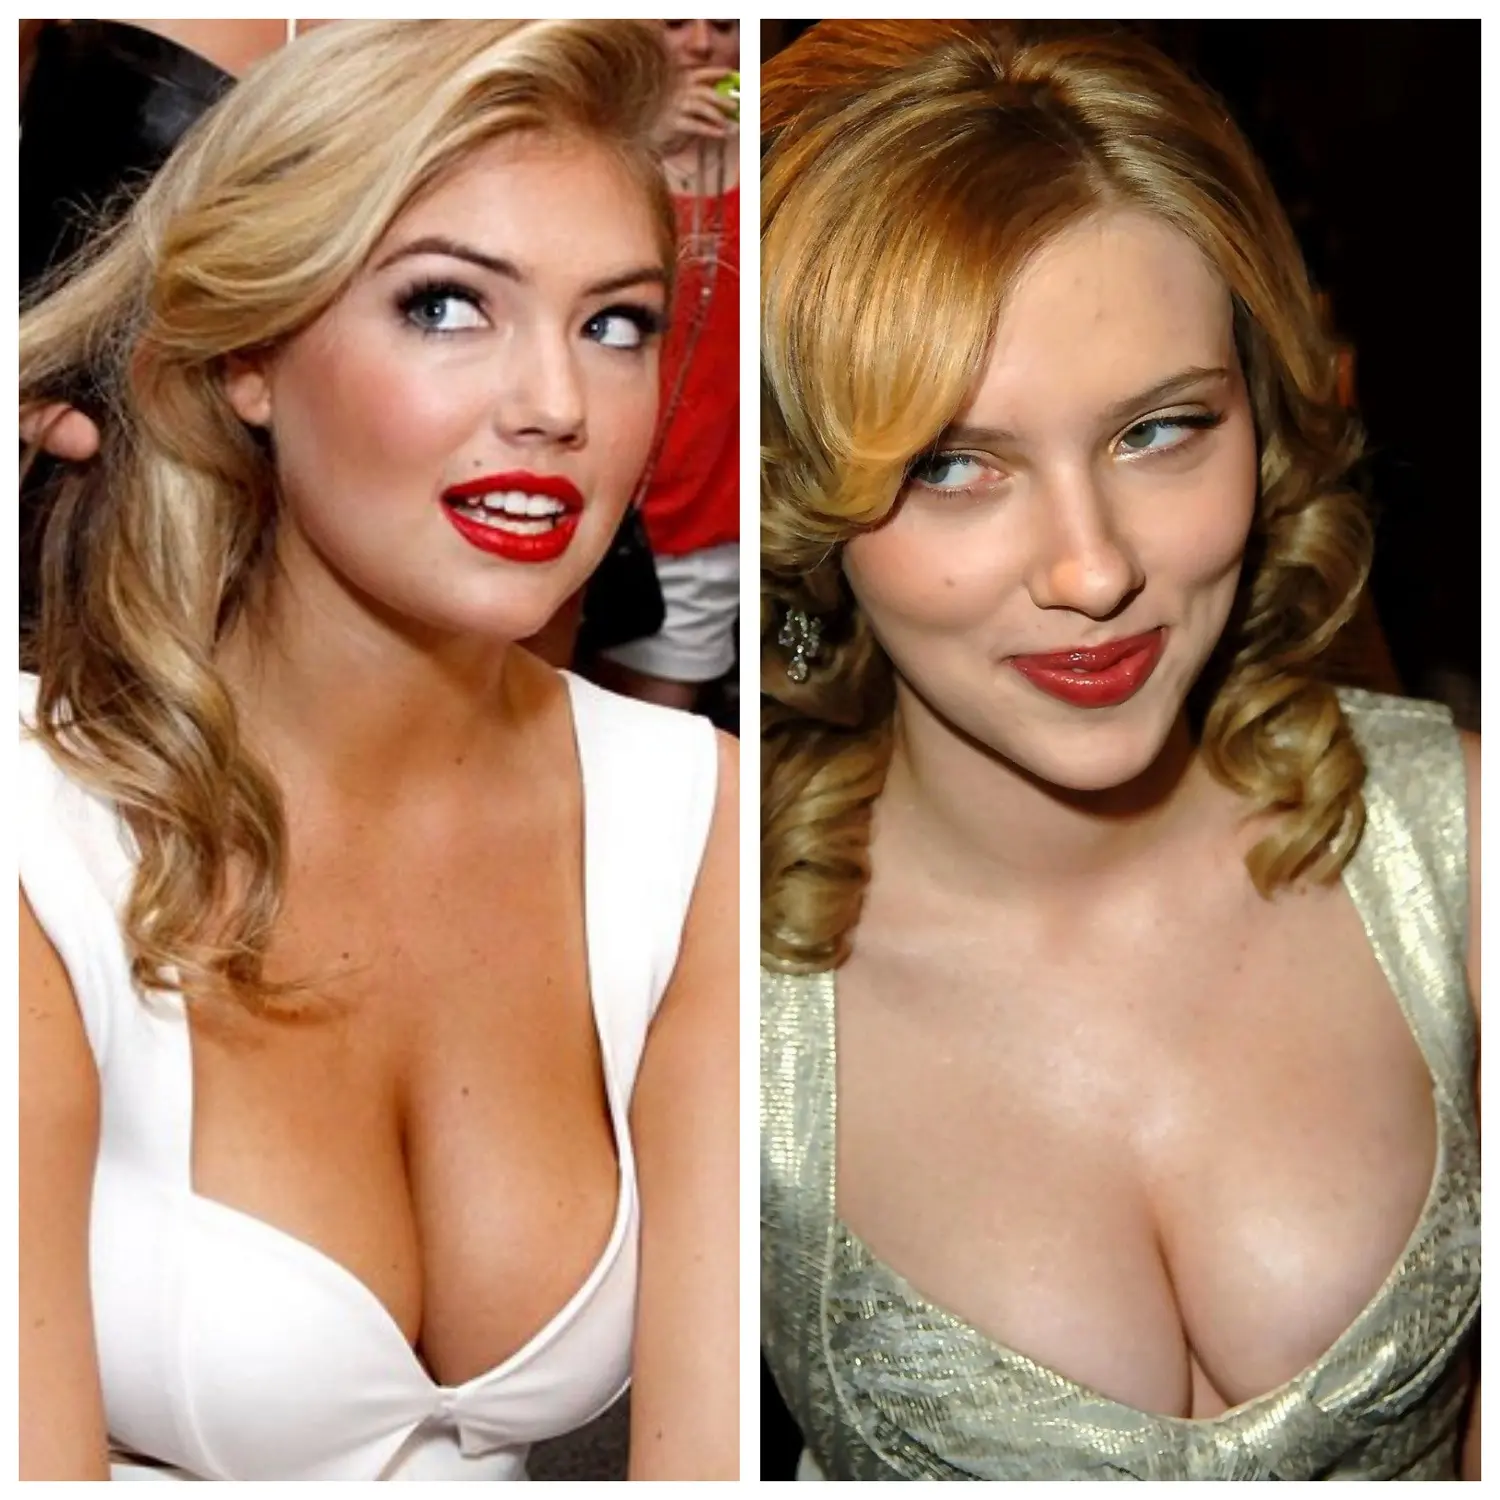 Kate Upton vs Scarlett Johansson.jpg